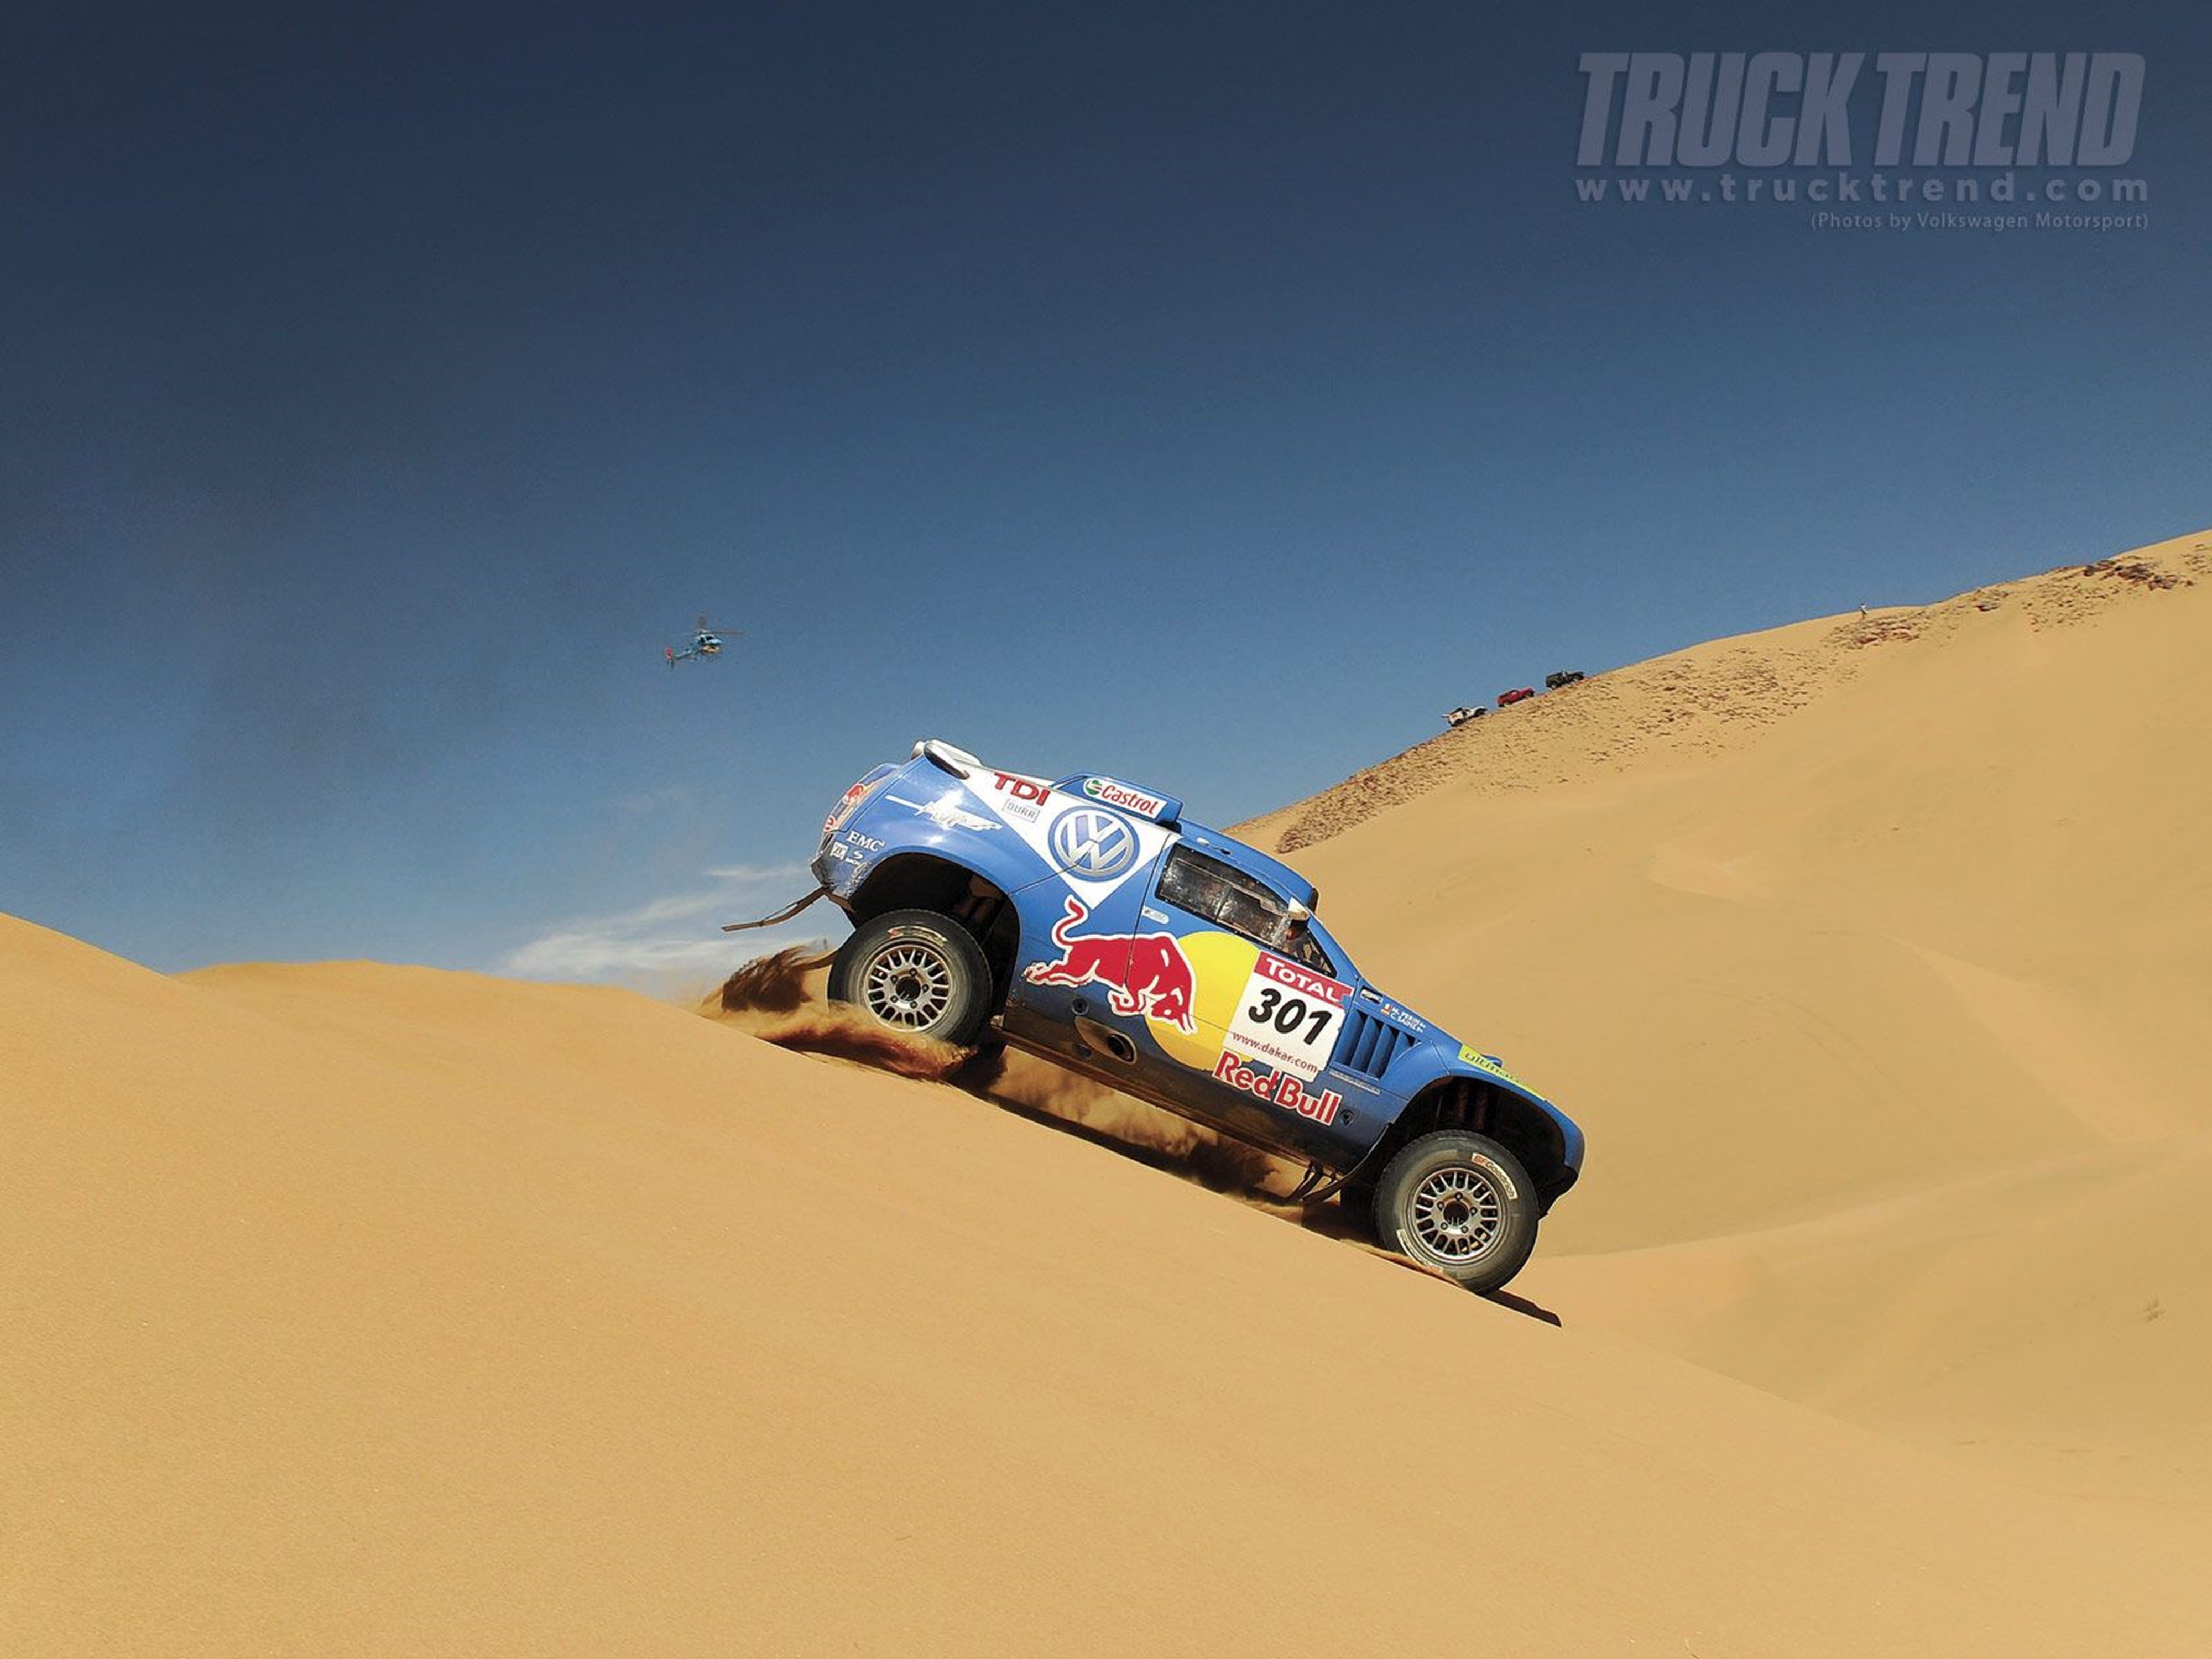 dakar, 2009, Volkswagen, Race, Touareg, Racing, Car, Sand, Desert, Rally, 4000x3000 Wallpaper